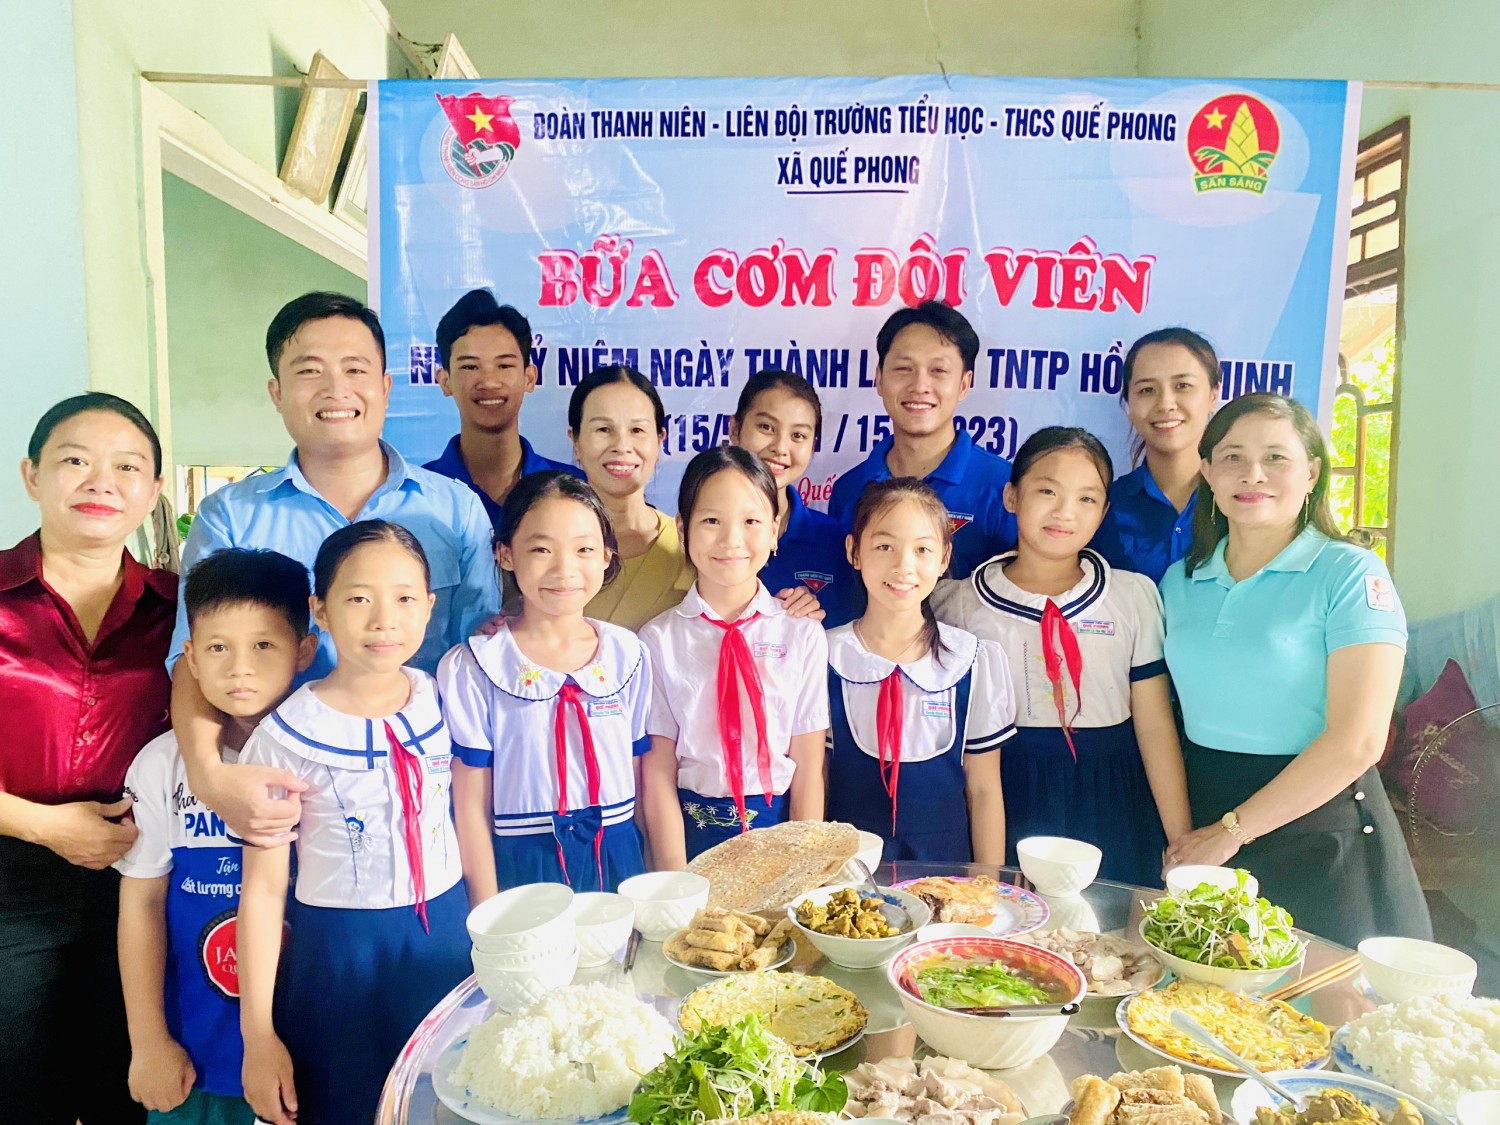 Đoàn thanh niên-Hội đồng đội xã Quế Phong phối hợp Liên đội Tiểu học-THCS Quế Phong tổ chức thăm, tặng quà và “Bữa cơm đội viên” nhân kỷ niệm 82 năm ngày thành lập Đội TNTP Hồ Chí Minh (15/5/1941-15/5/2023)